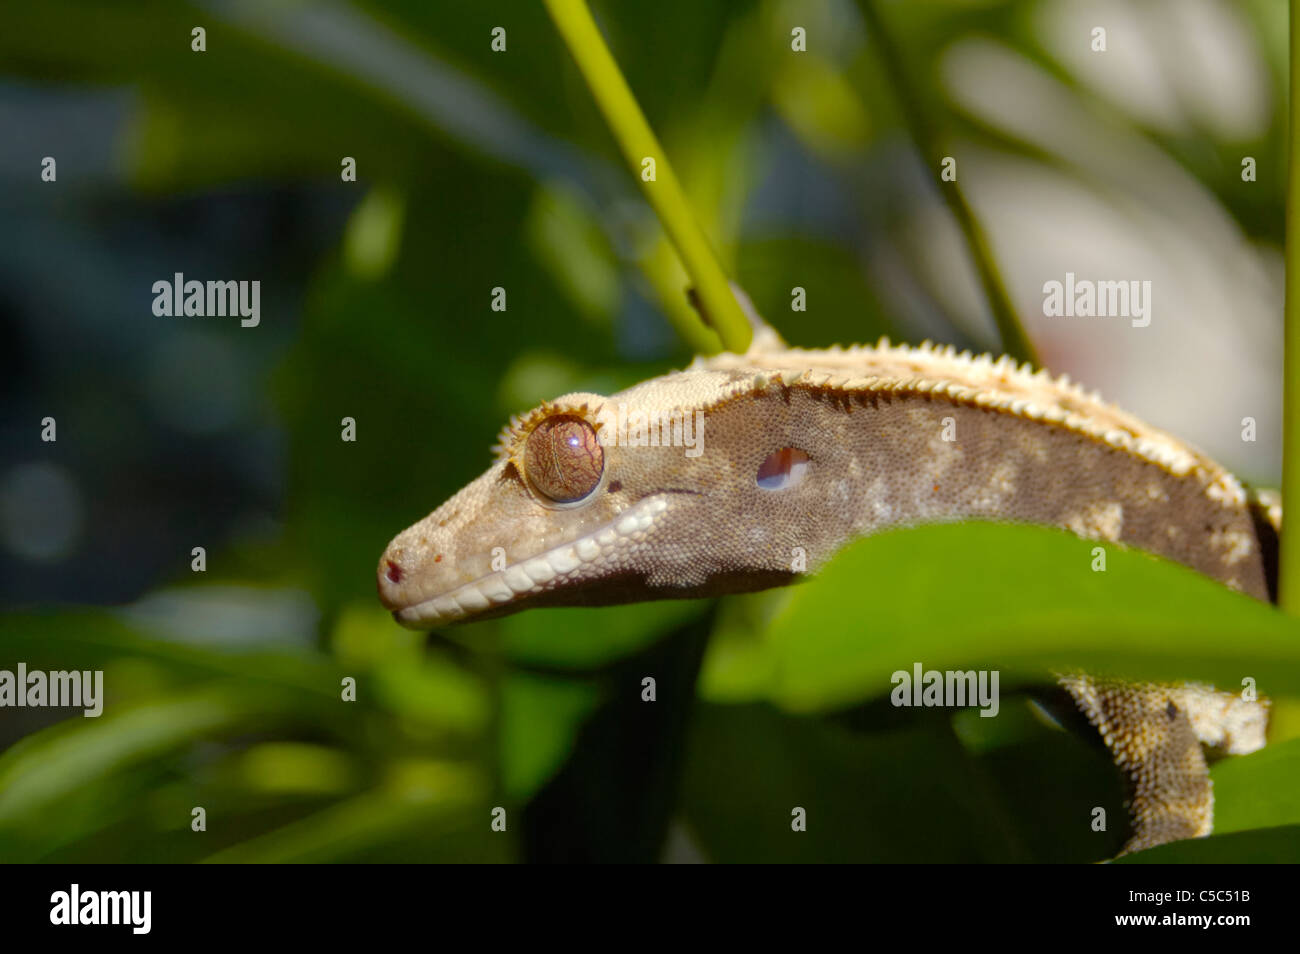 Crested Gecko Closeup, seduti in un impianto di philodendron. Foto Stock